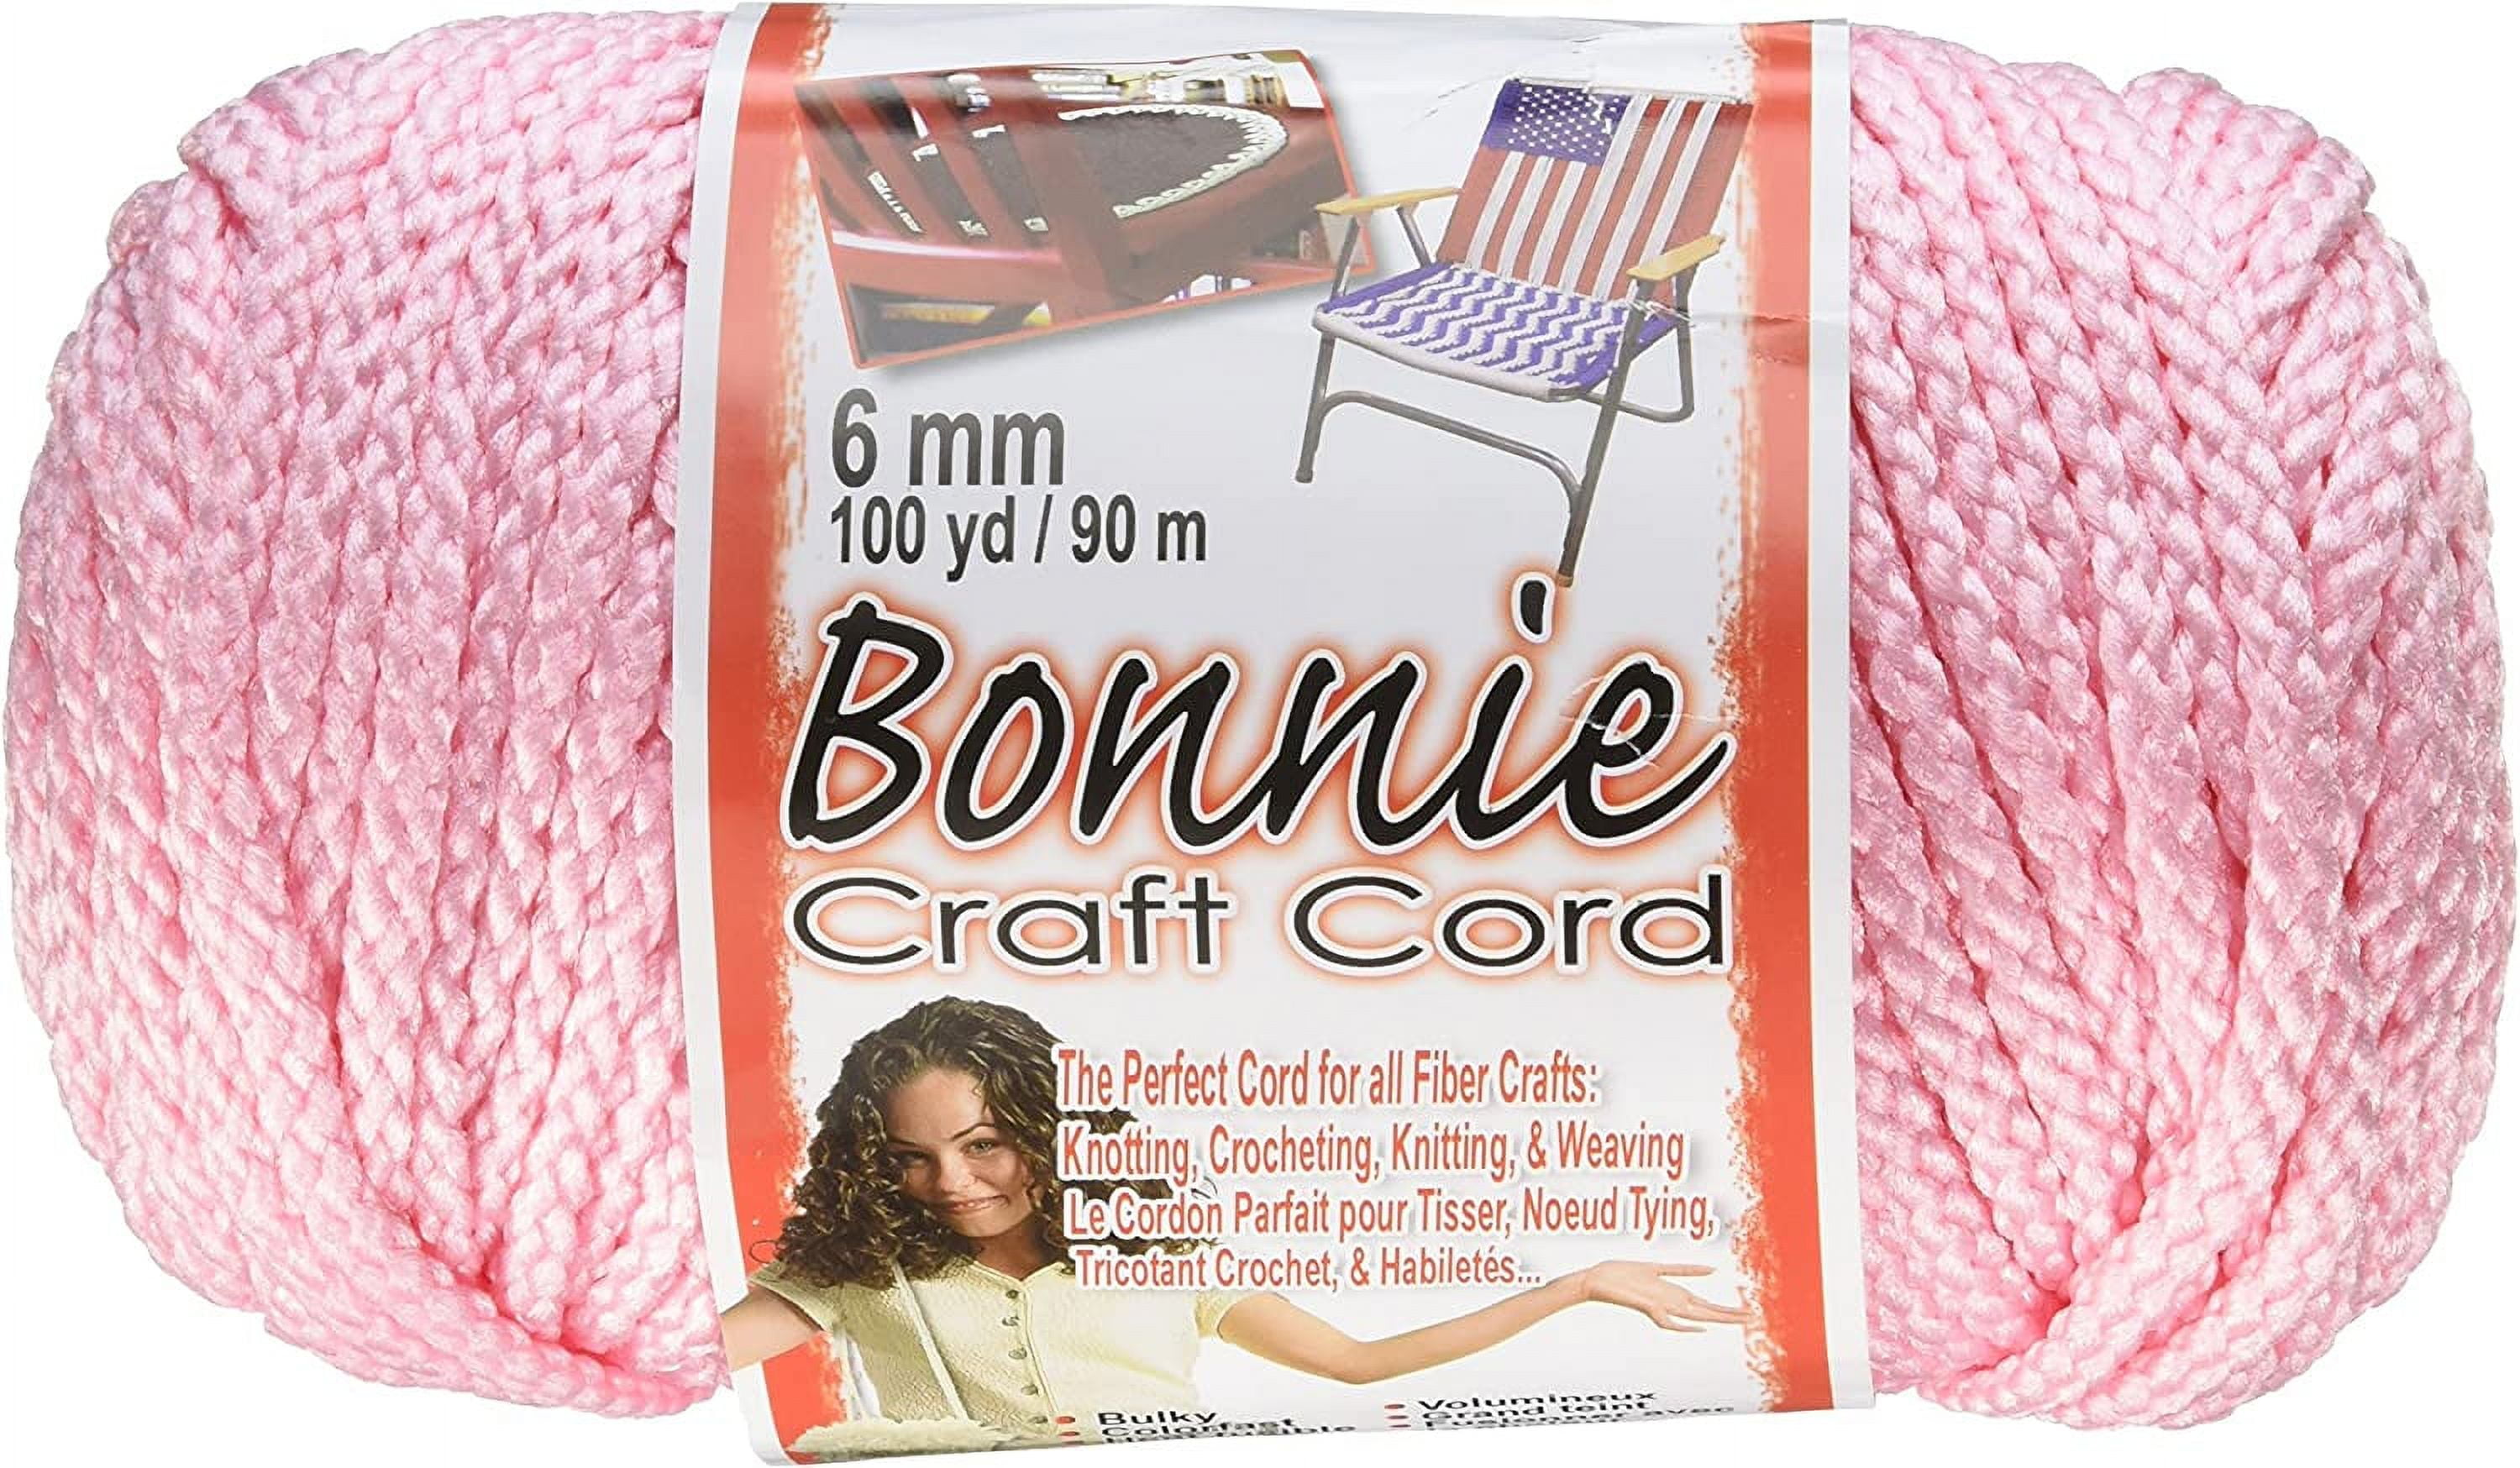 6mm Bonnie craft cord